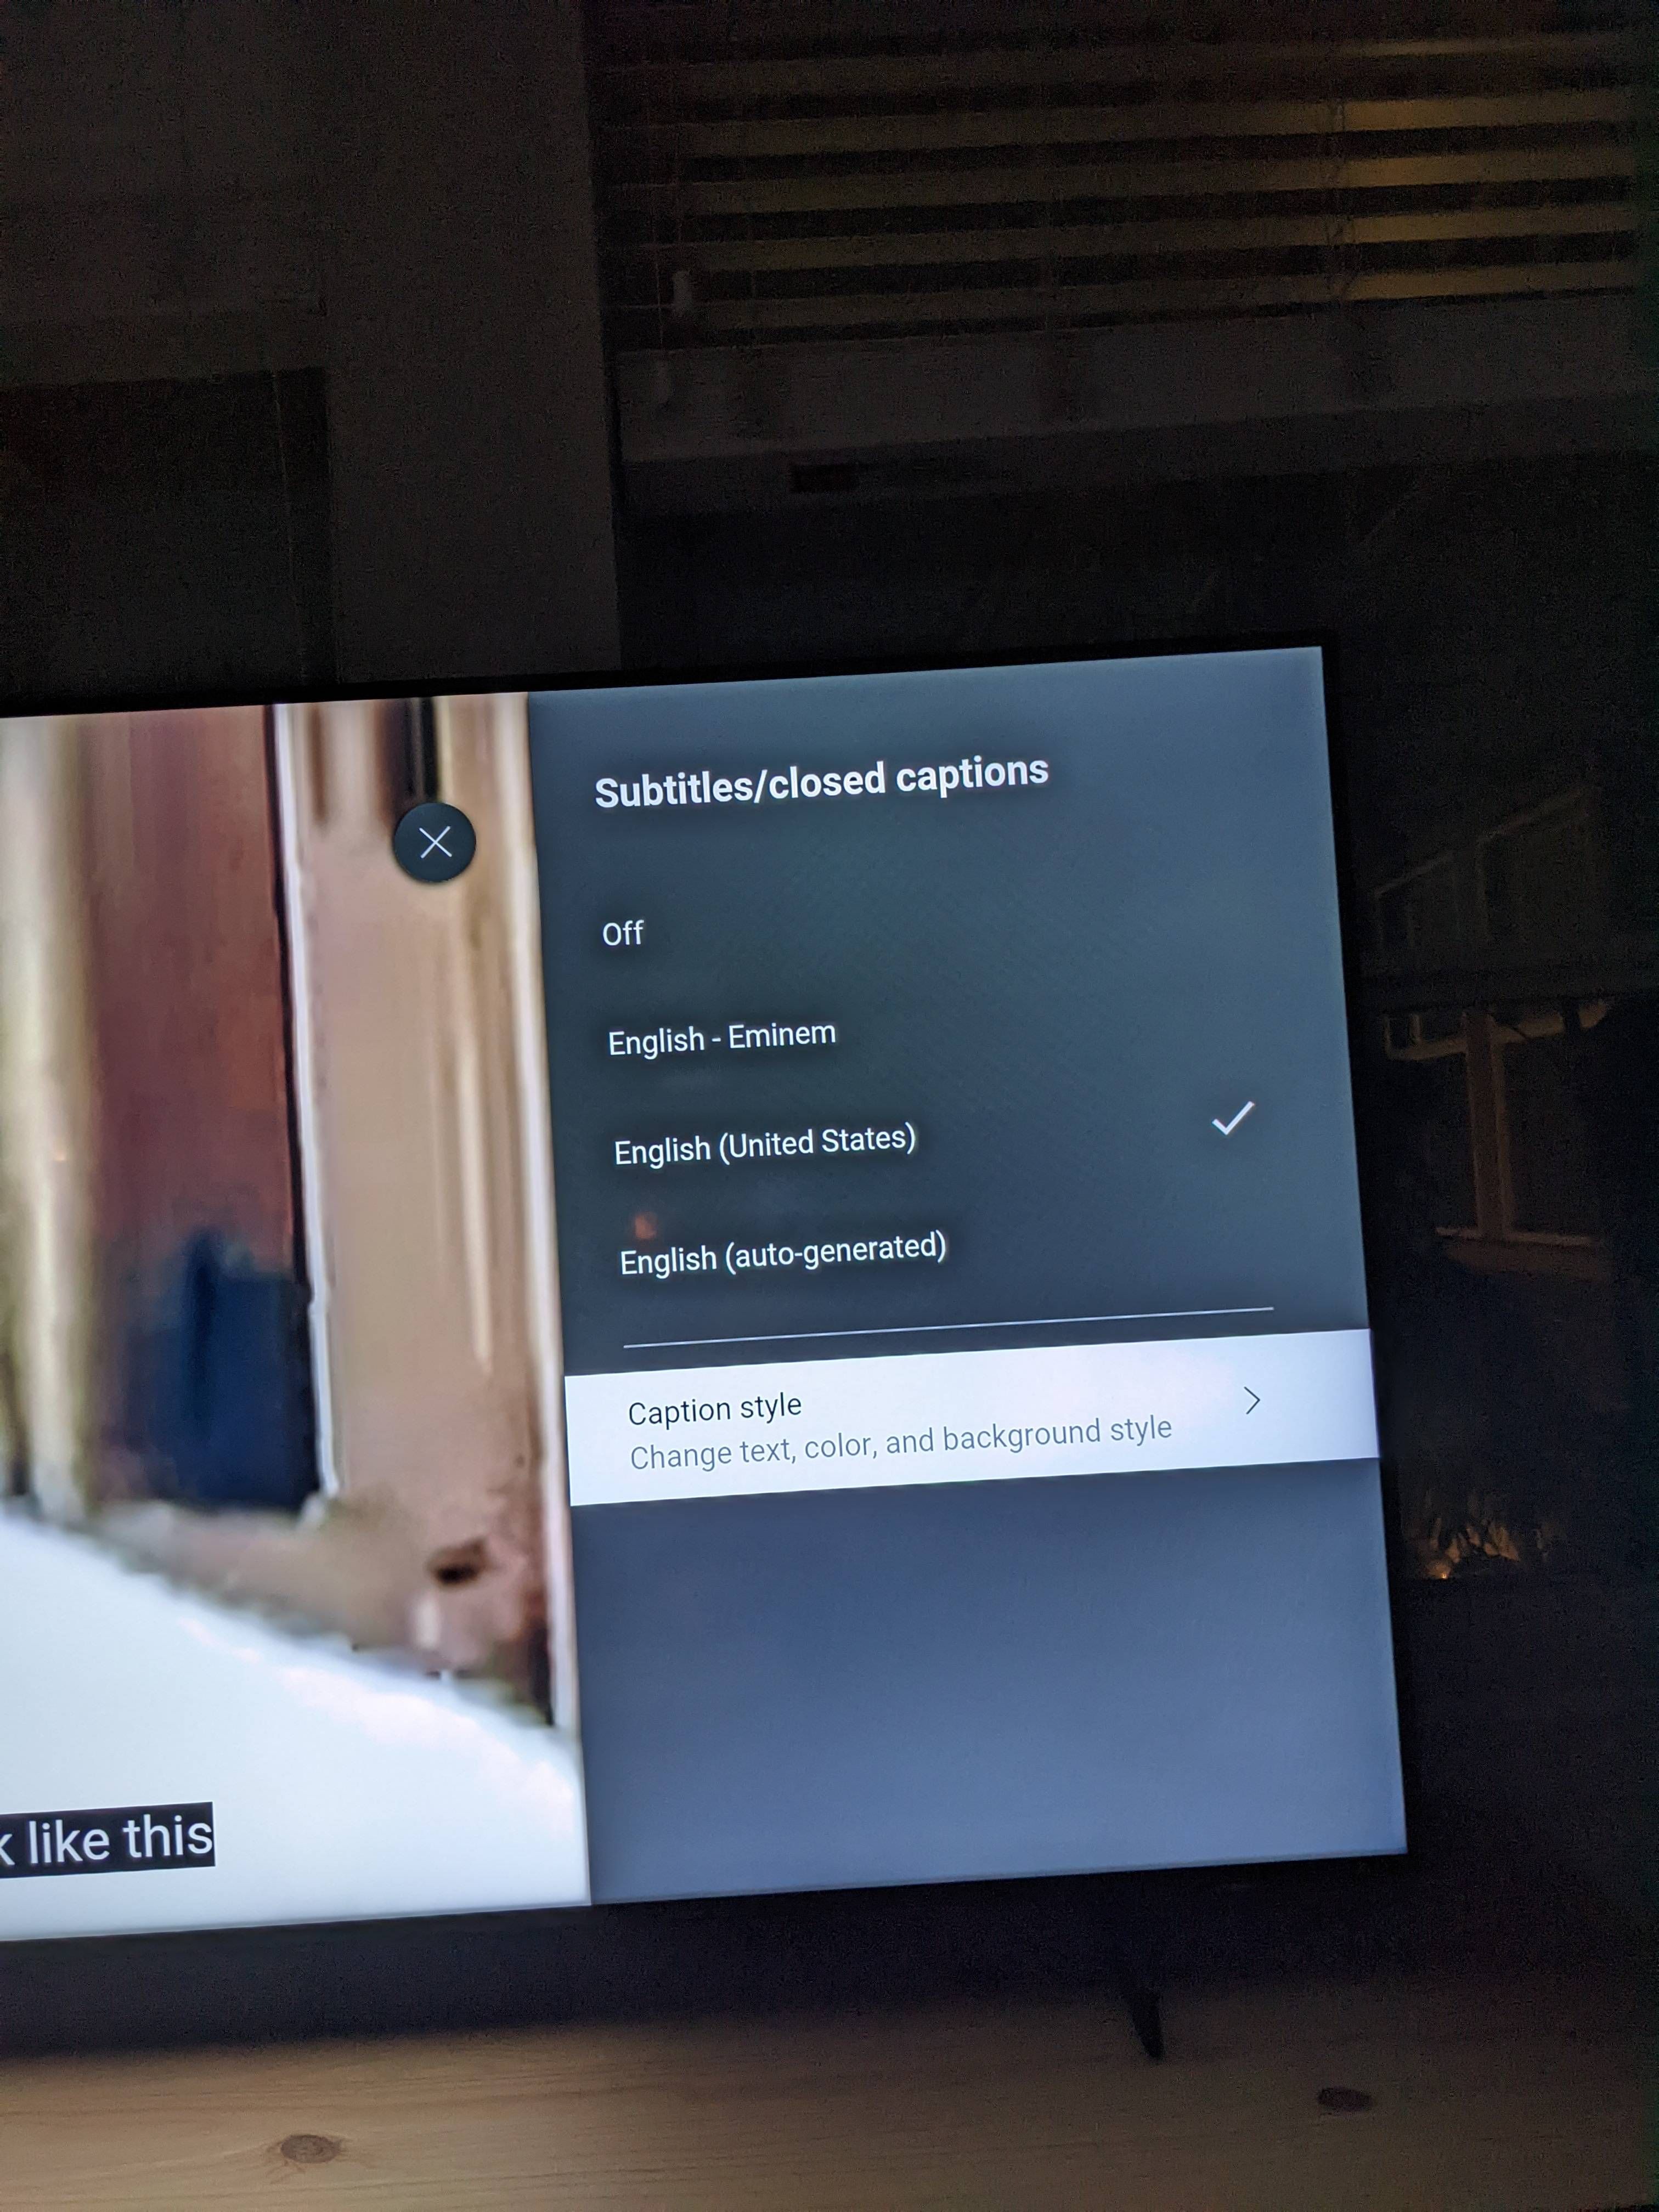 My TV has "English - Eminem" as a language option